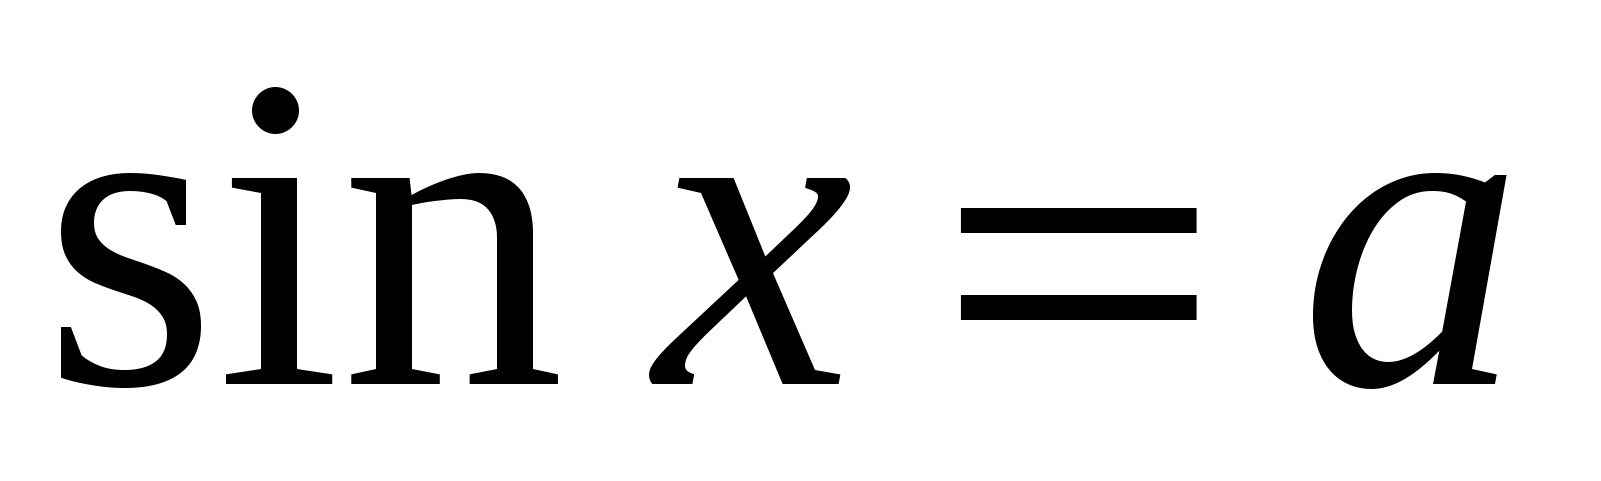 Конспект по алгебре тригонометрические уравнения